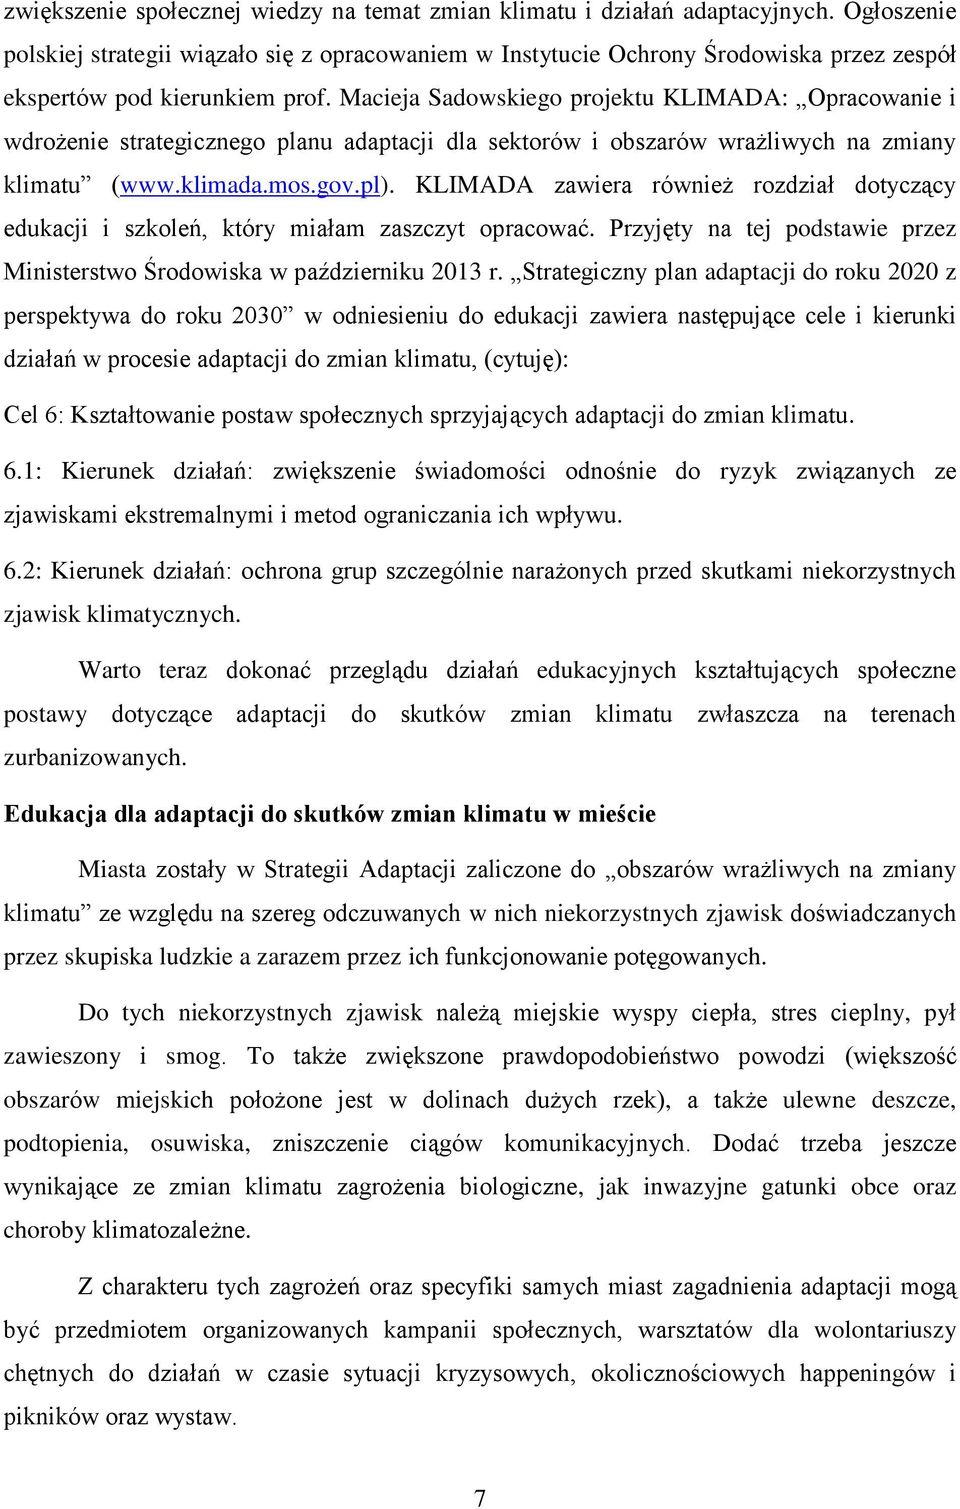 Macieja Sadowskiego projektu KLIMADA: Opracowanie i wdrożenie strategicznego planu adaptacji dla sektorów i obszarów wrażliwych na zmiany klimatu (www.klimada.mos.gov.pl).